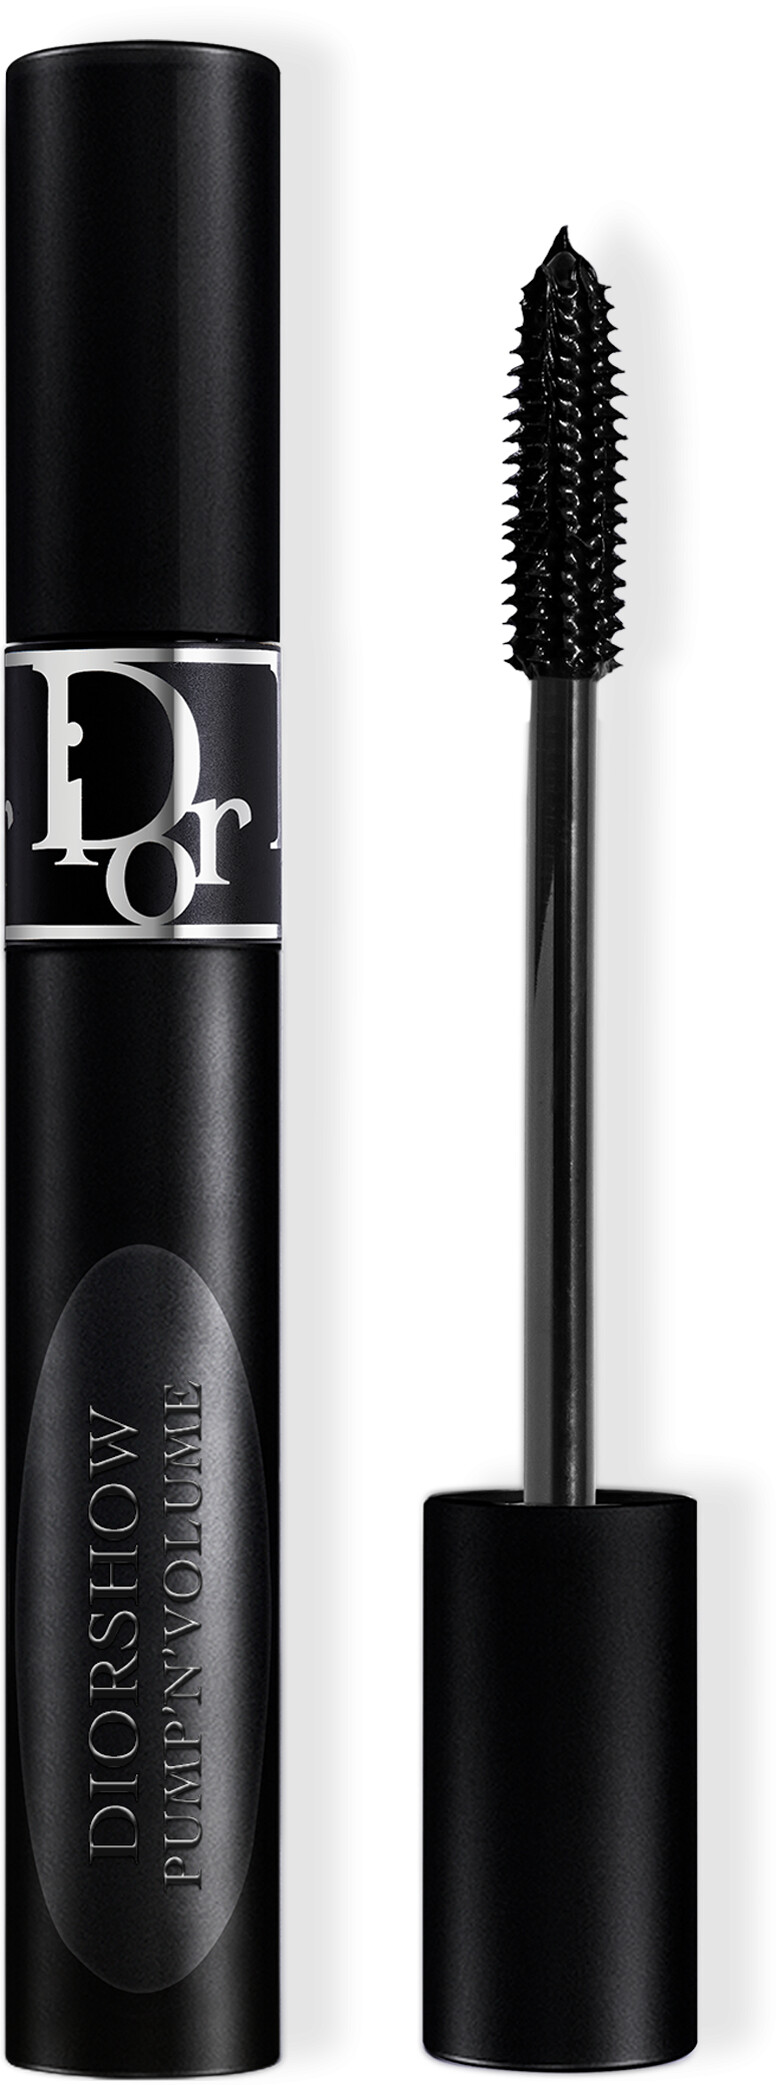 DIOR Diorshow Pump 'N' Volume Mascara 6g 090 - Noir / Black